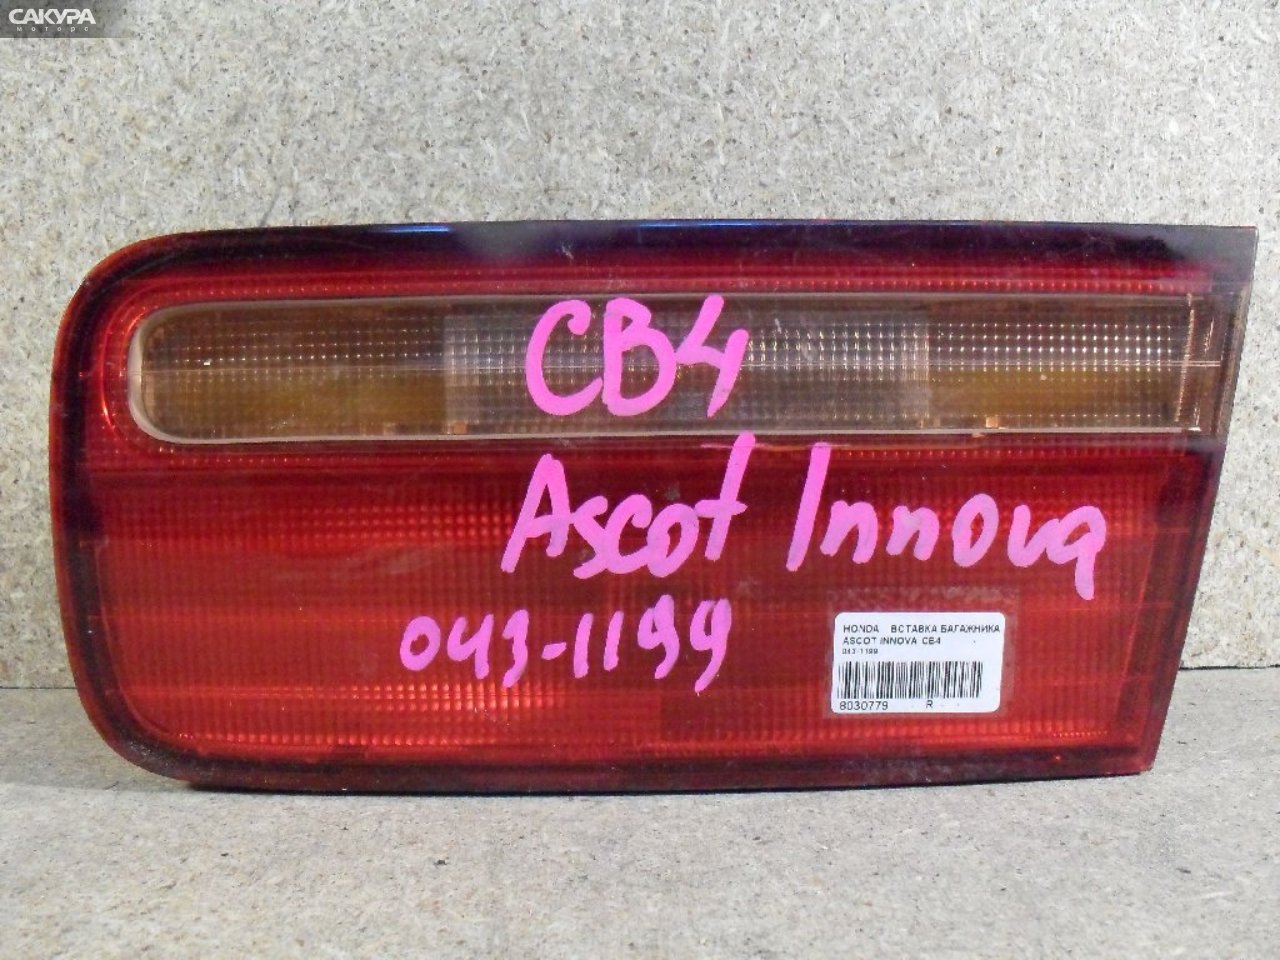 Фонарь вставка багажника правый Honda Ascot Innova CB4 043-1199: купить в Сакура Абакан.